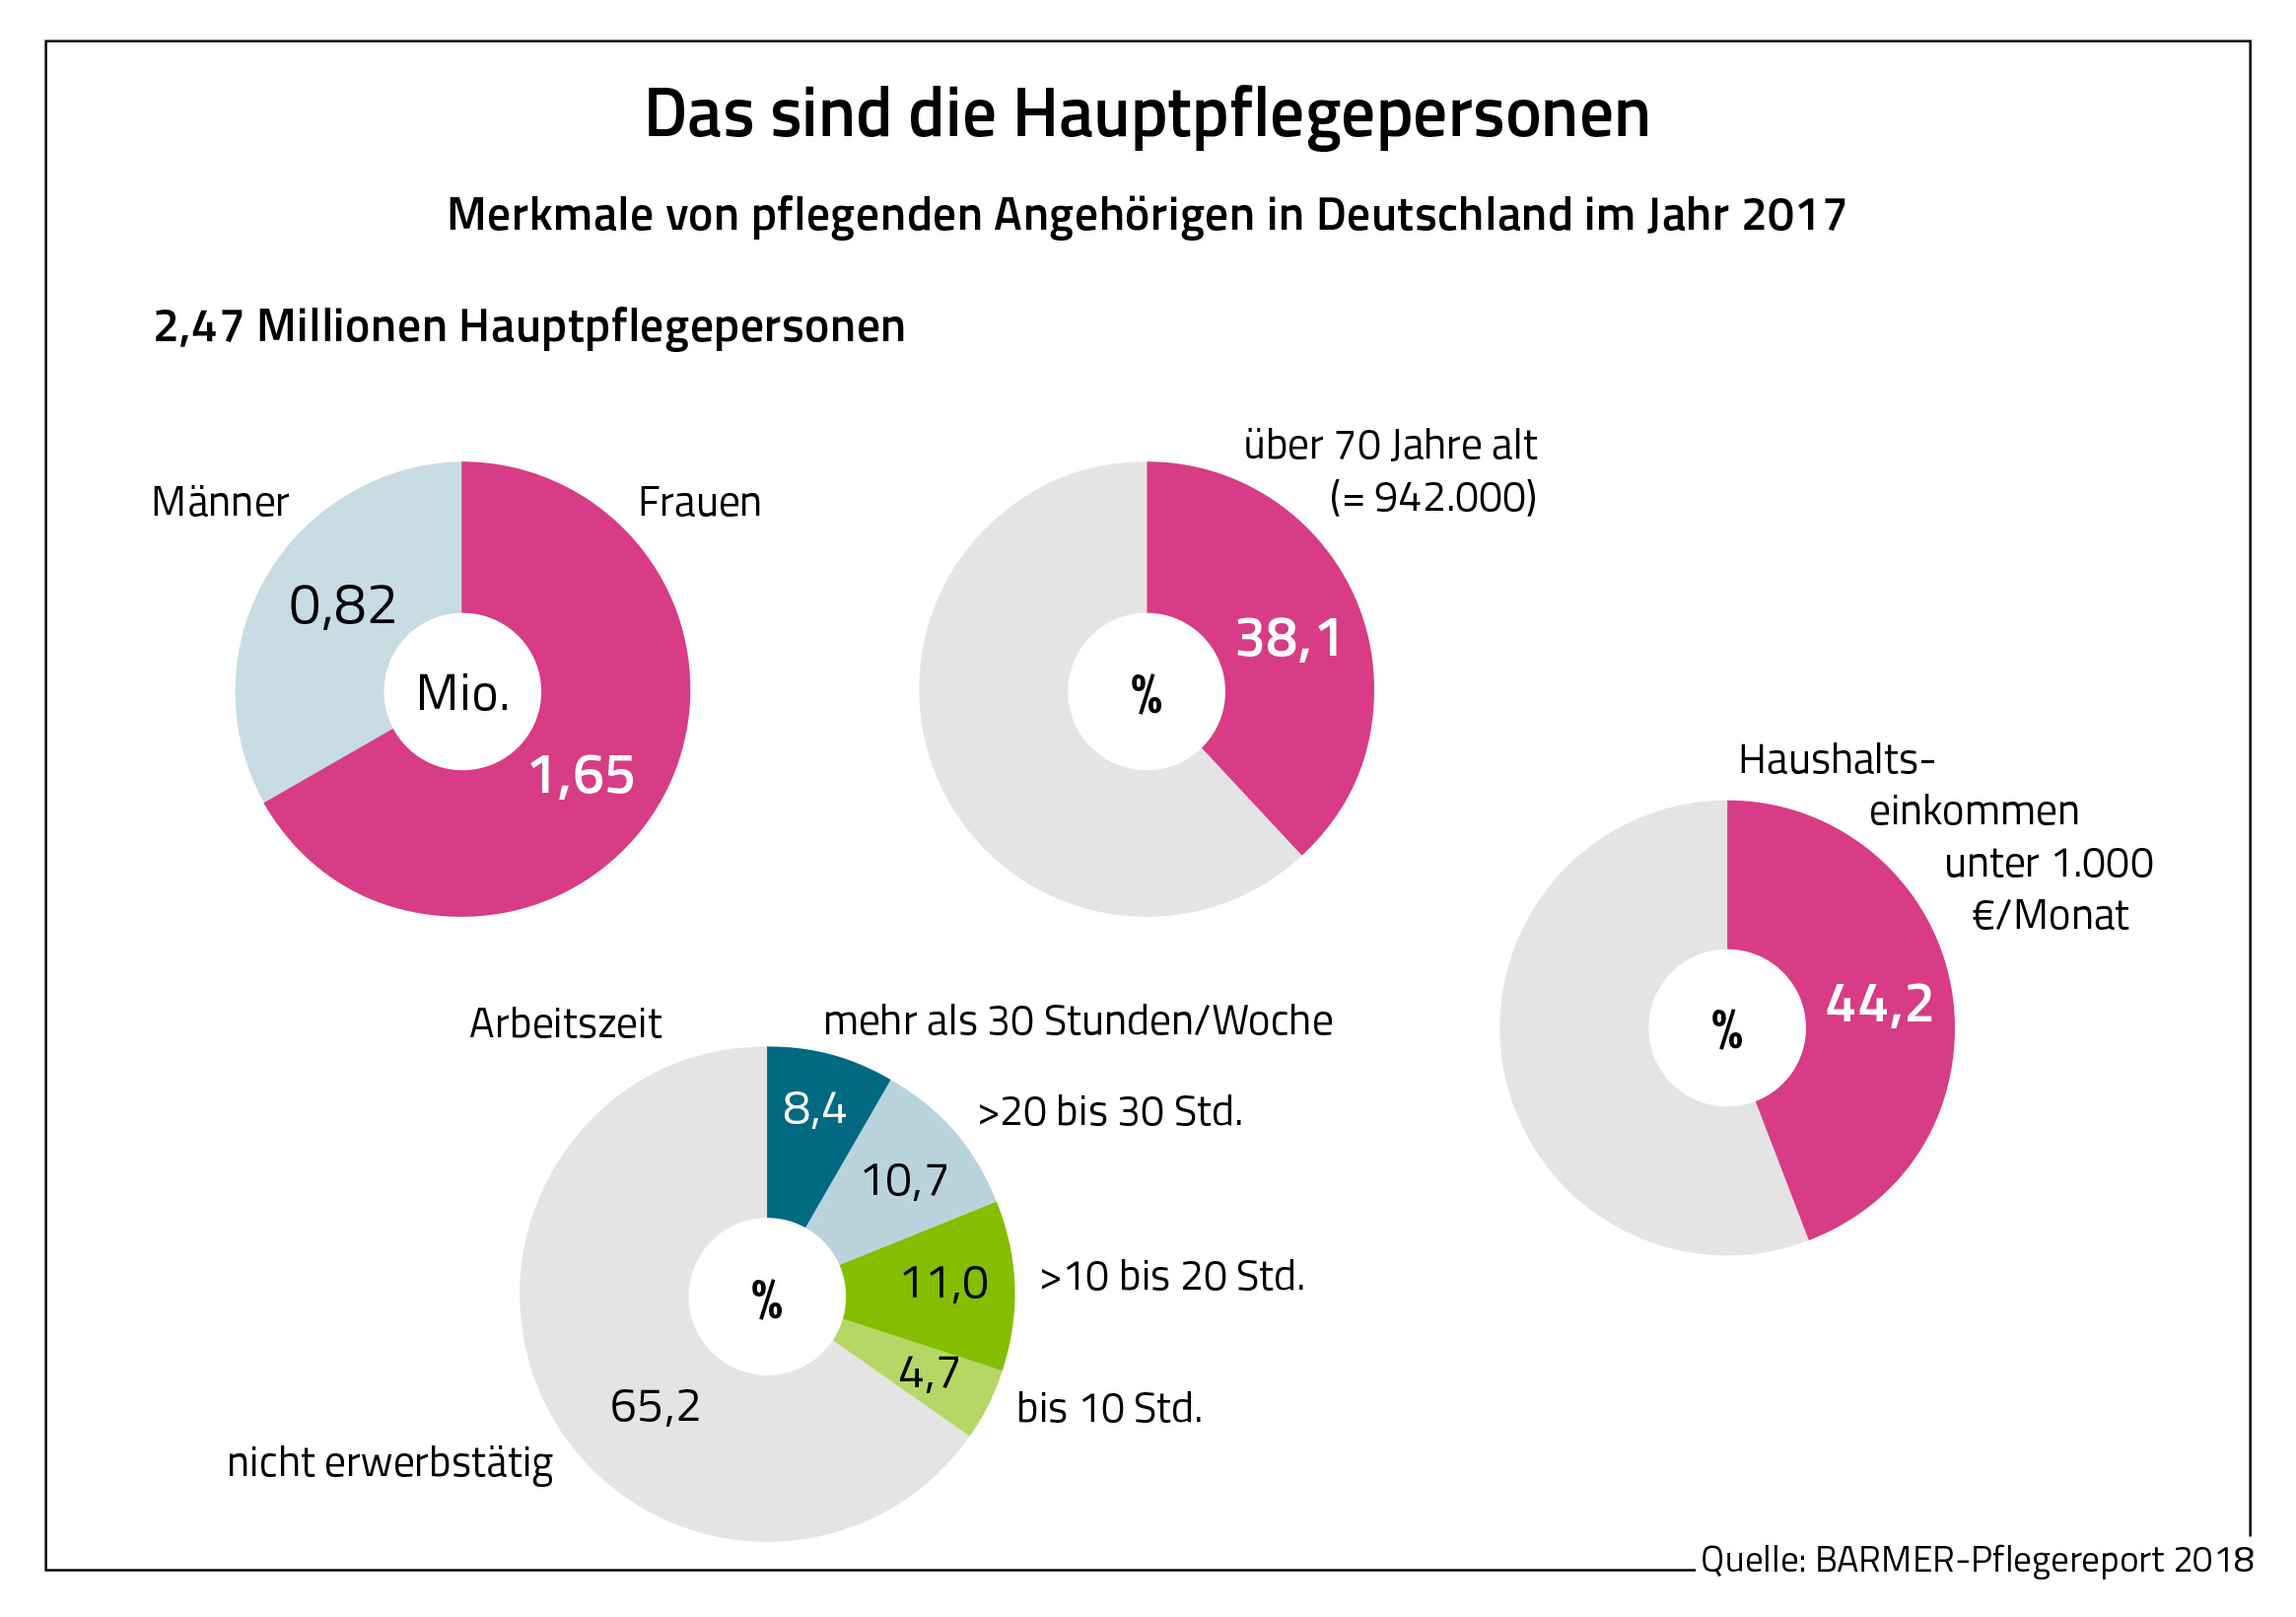 Die Grafik zeigt die Merkmale von pflegenden Angehörigen in Deutschland im Jahre 2017.